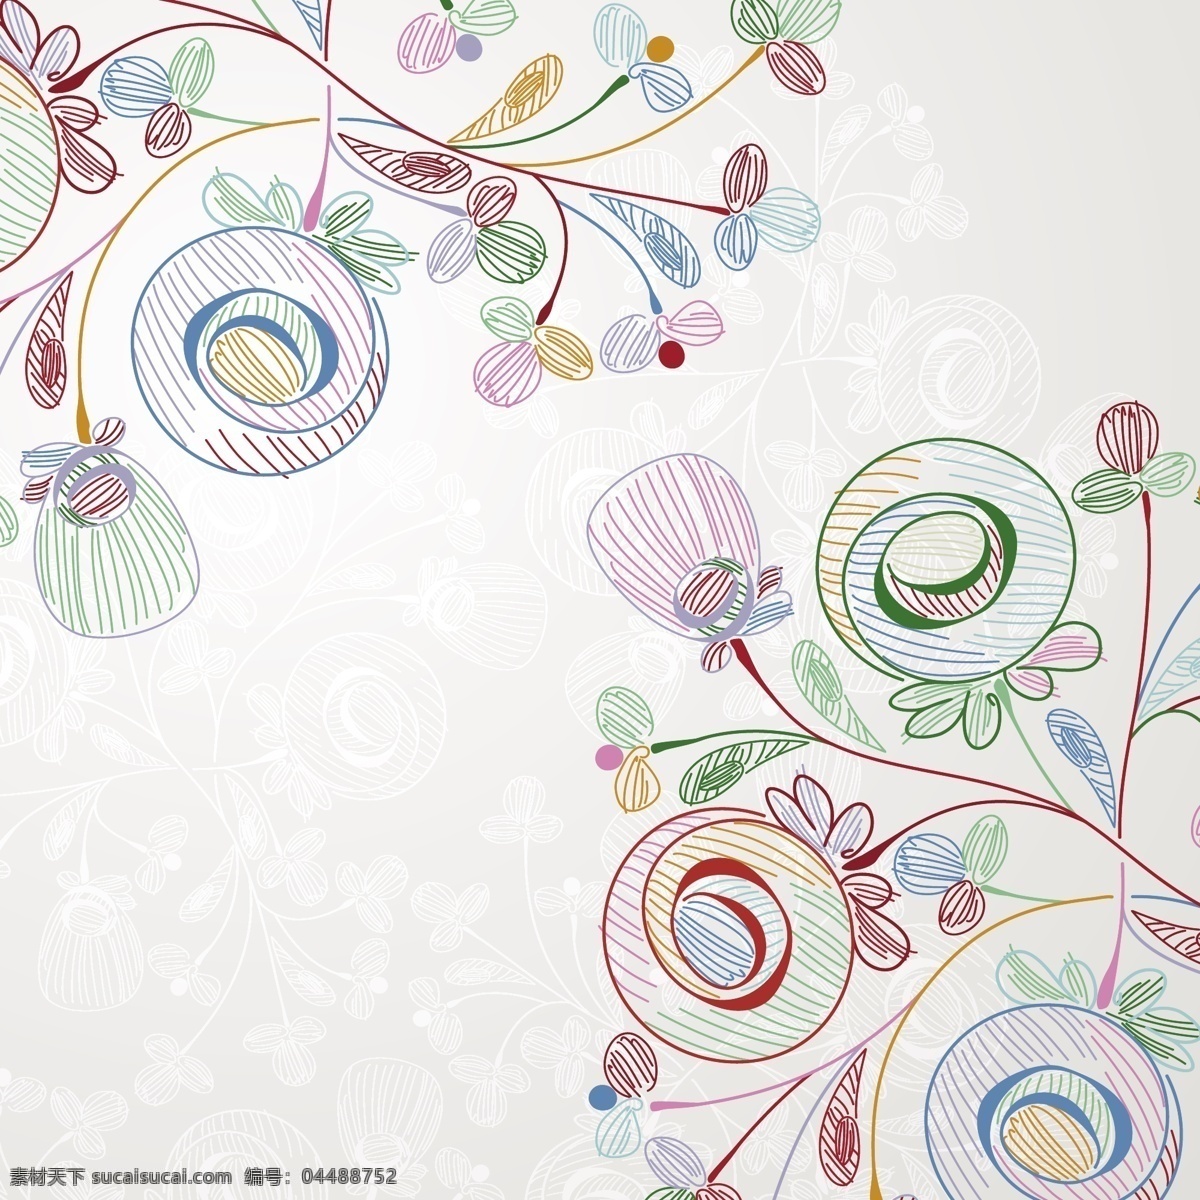 蜡笔 风格 矢量 花卉 插图 花 蜡笔风格 风格的花卉 花卉插图 自由 圆 式 传统 矢量图 日常生活